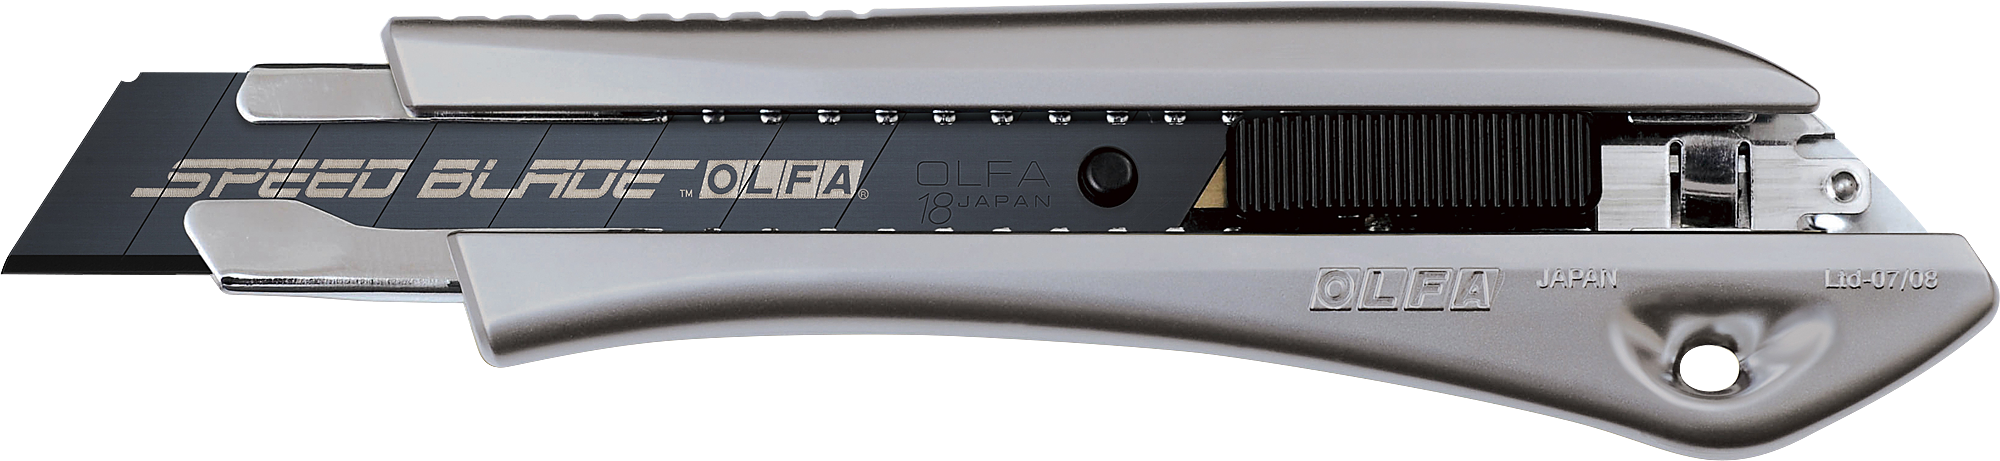 Нож 18мм, автофиксатор Olfa. Нож Olfa с сегментированным лезвием 18 мм ol-Ltd-l-LFB. Olfa лезвия 18мм. Olfa ol-Ltd-al-LFB.